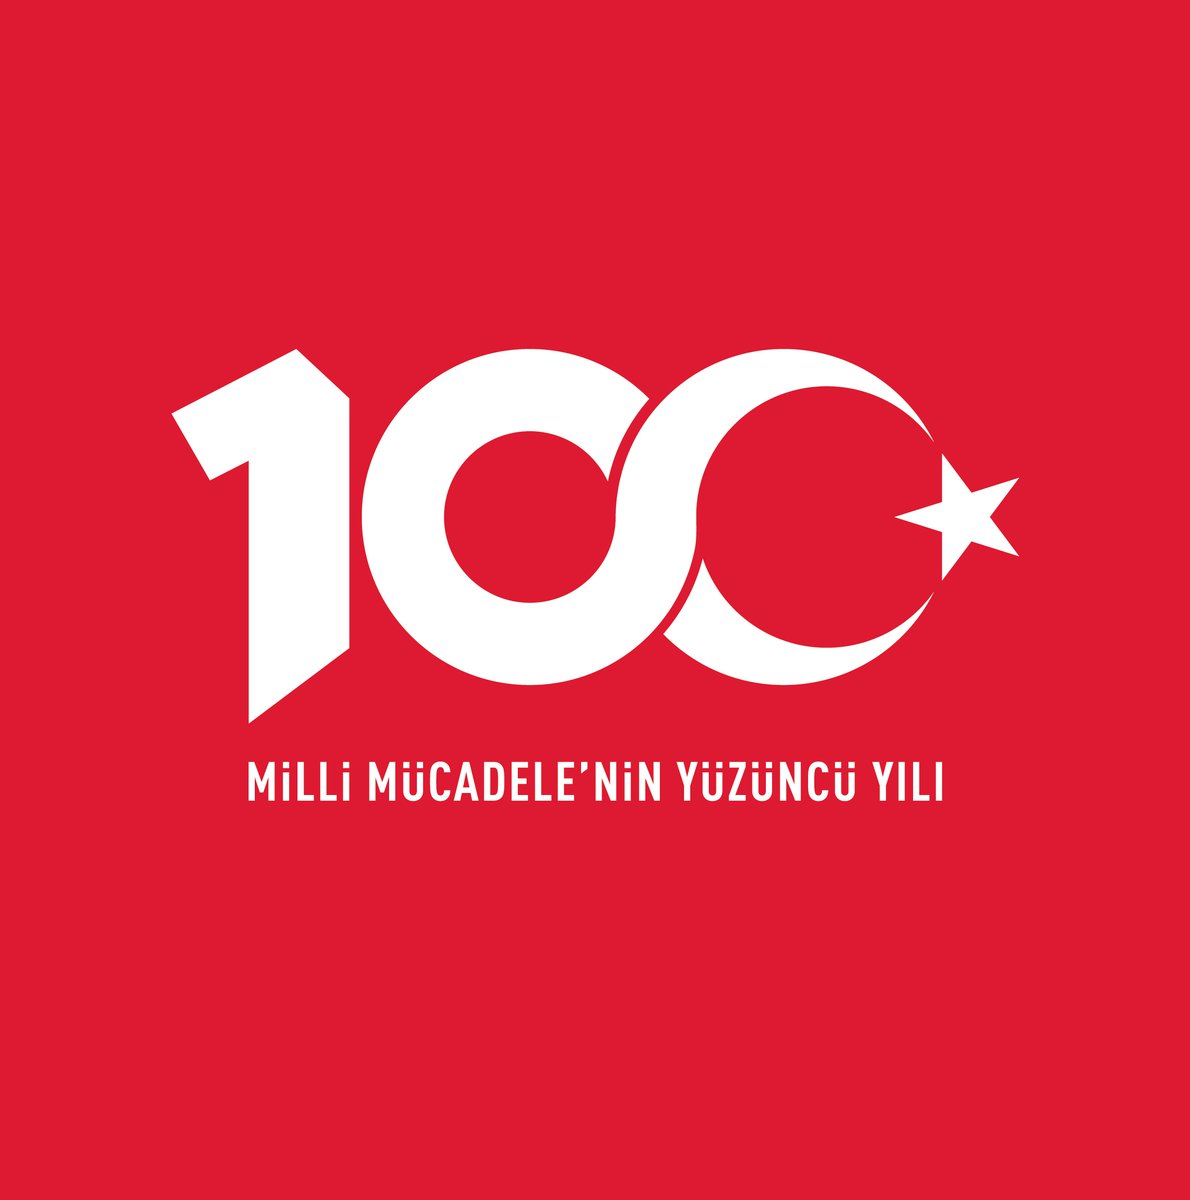 Başta Cumhuriyetimizin Kurucusu, Ulu Önderimiz Gazi Mustafa Kemal Atatürk'e ve onun tüm silah arkadaşlarına sevgi, saygı, özlem ve minnet duyuyoruz! Cumhuriyet Bayramımız ve Cumhuriyetimizin 100. Yılı kutlu olsun!